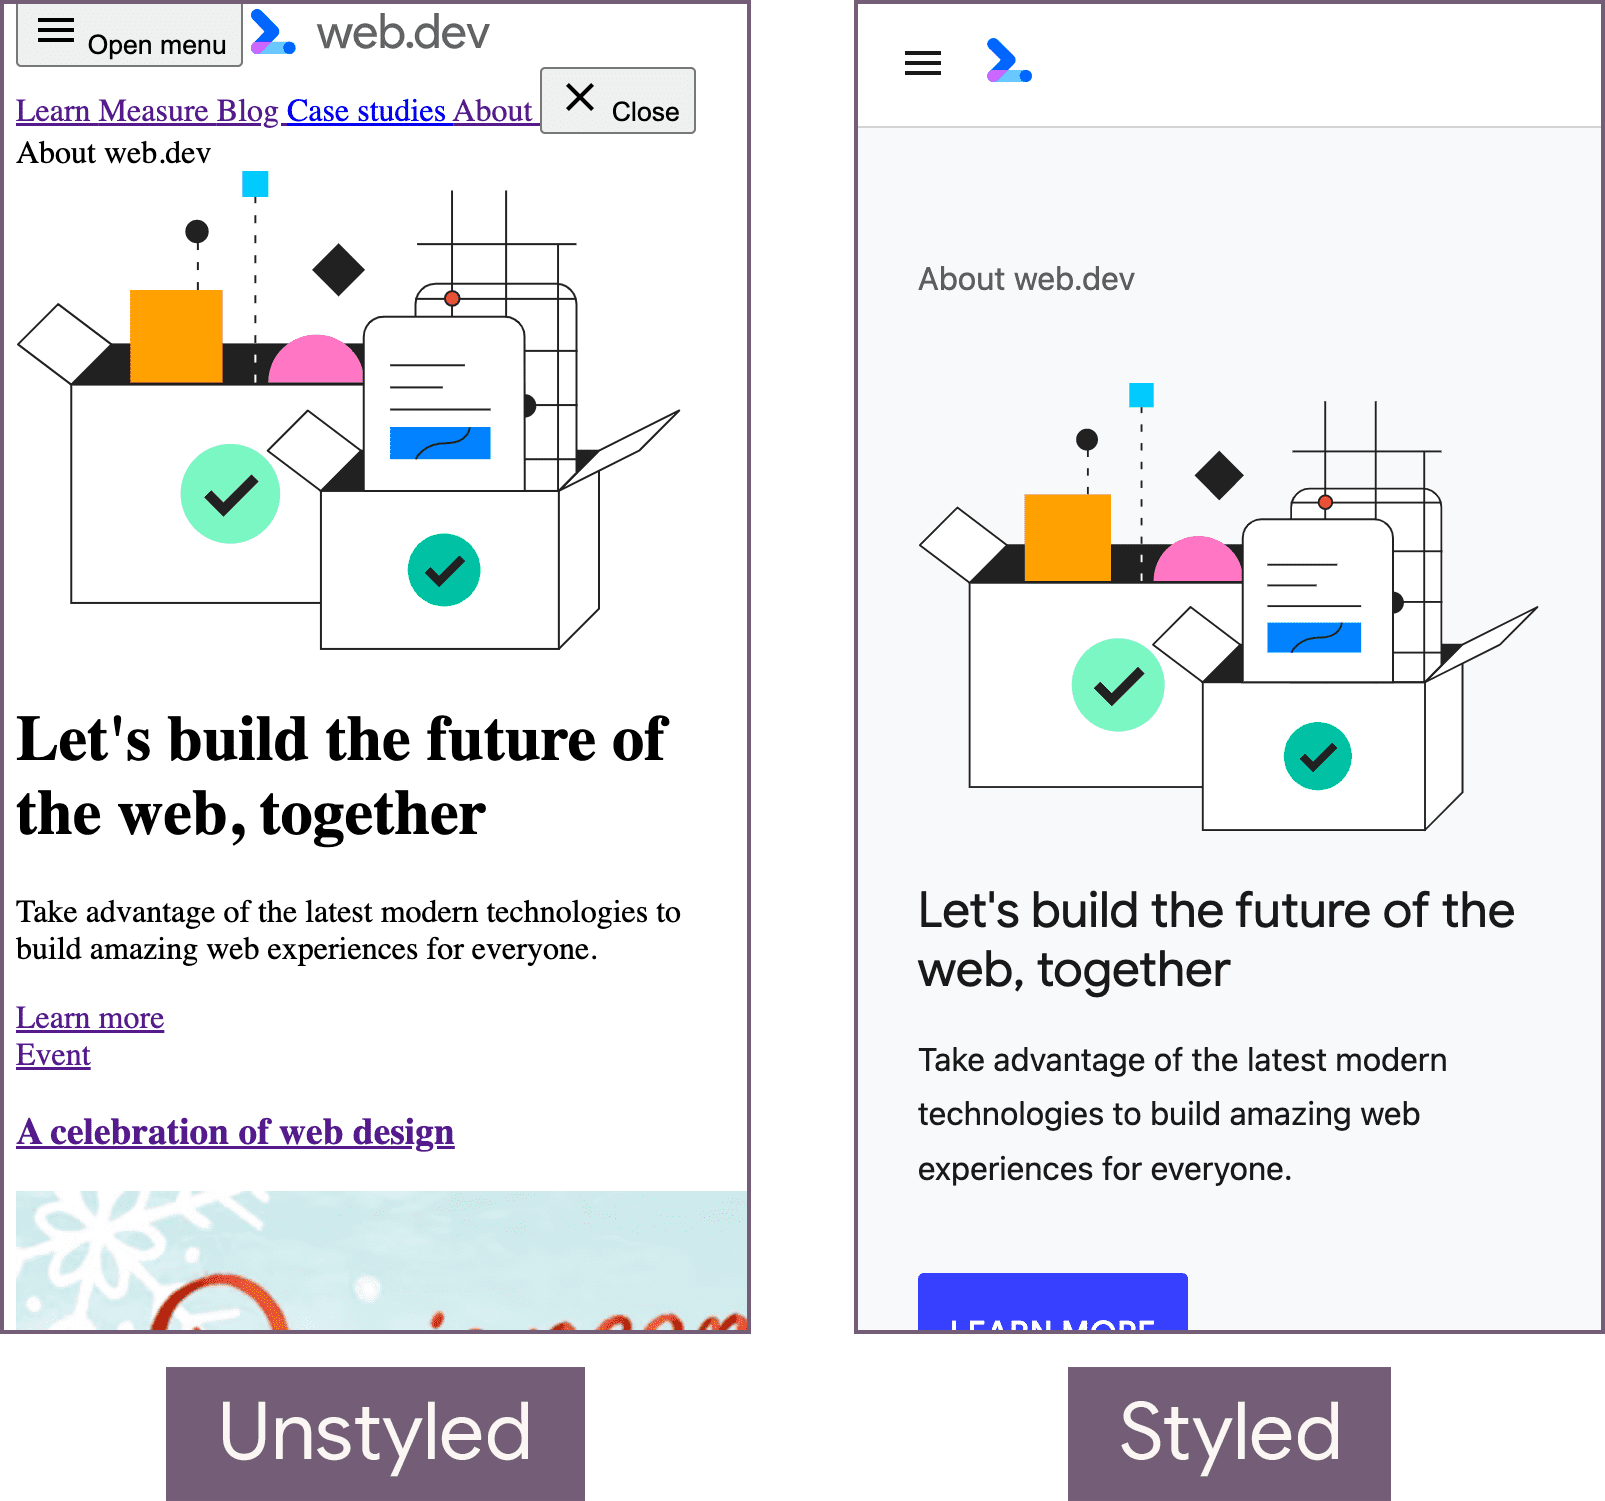 Trang chủ web.dev ở trạng thái chưa định kiểu (bên trái) và trạng thái đã tạo kiểu (bên phải).